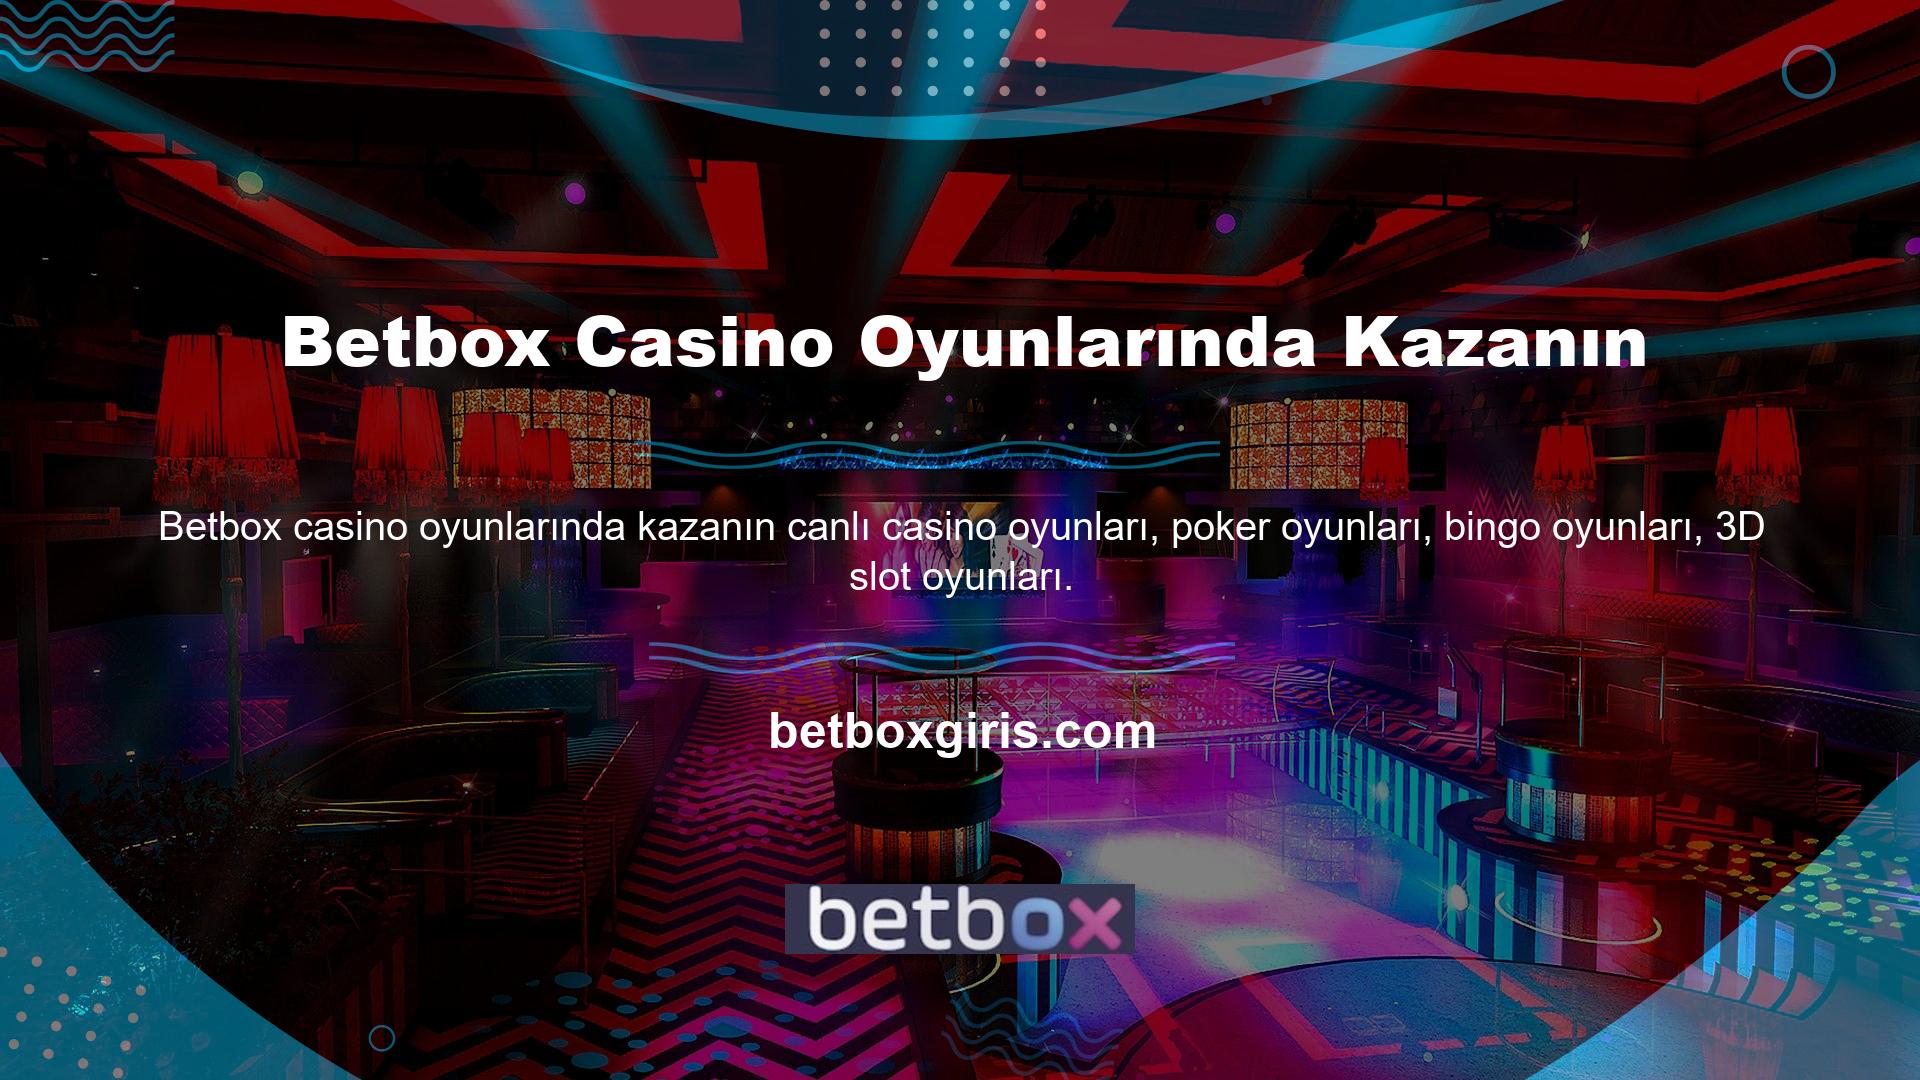 Win Betbox Casino Games ödülleri dağıtacak ve ödülleri almak isteyen tüm üyeler Betbox markasına katılmaya davet edilecek